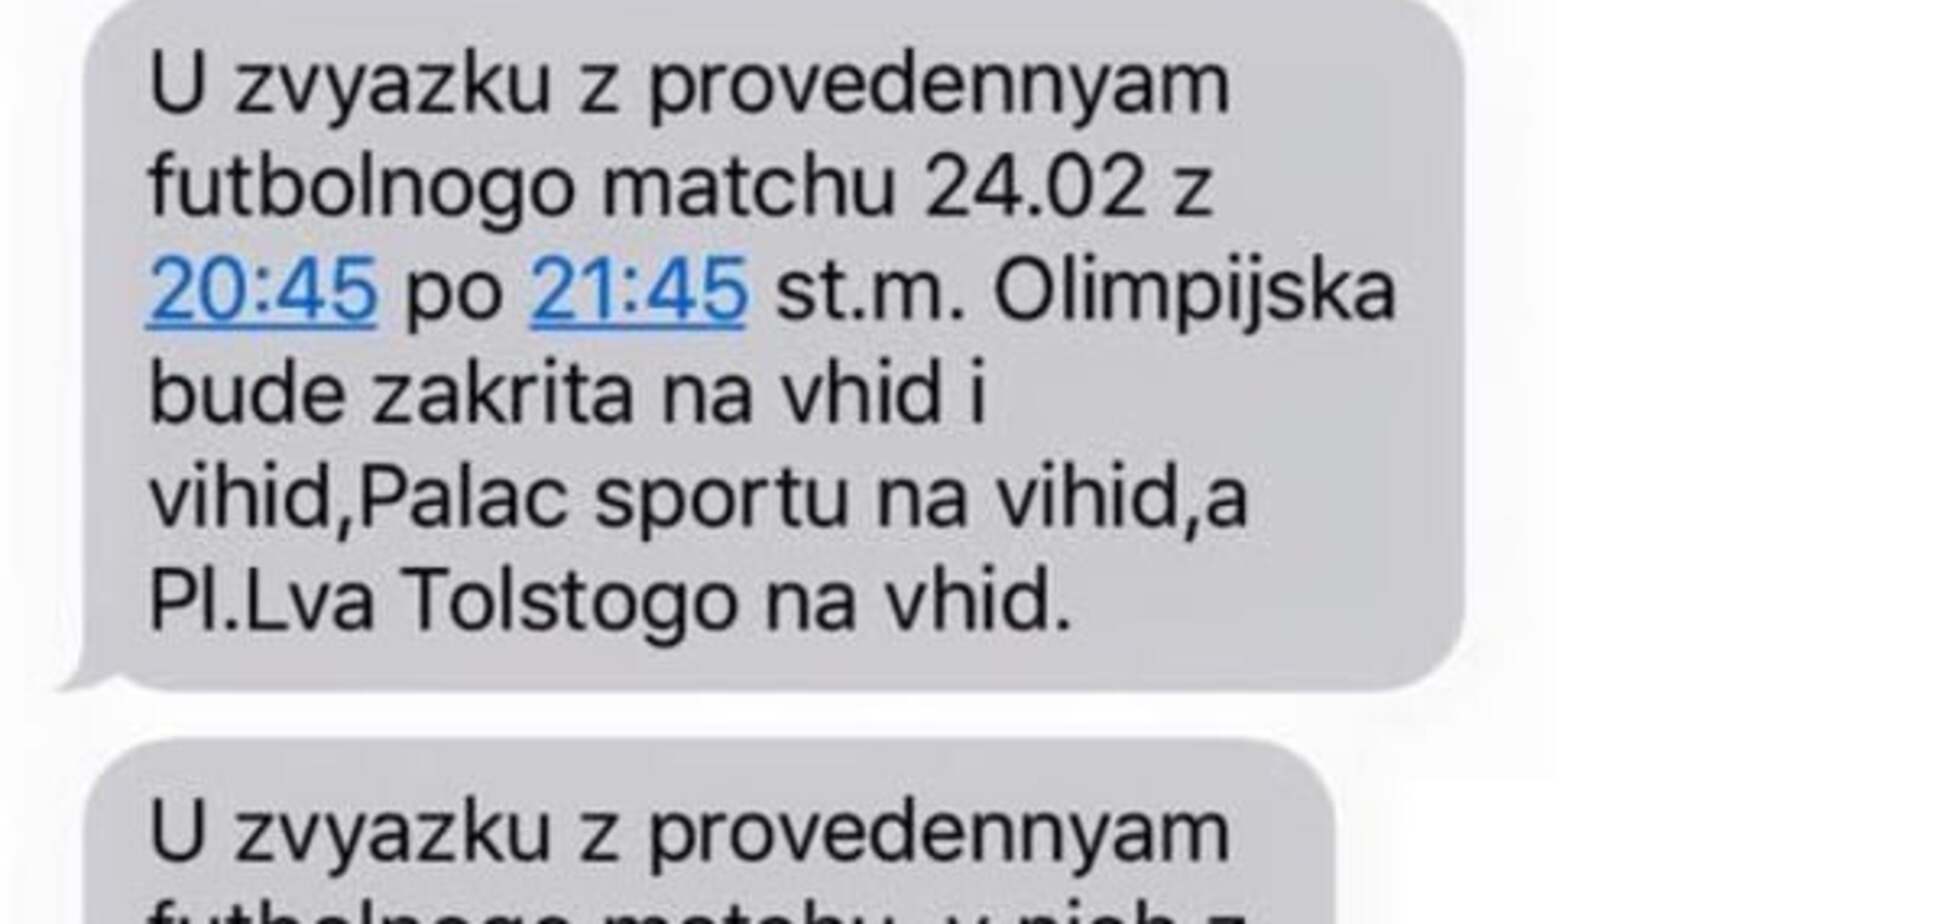 Київське метро почало розсилати SMS для пасажирів